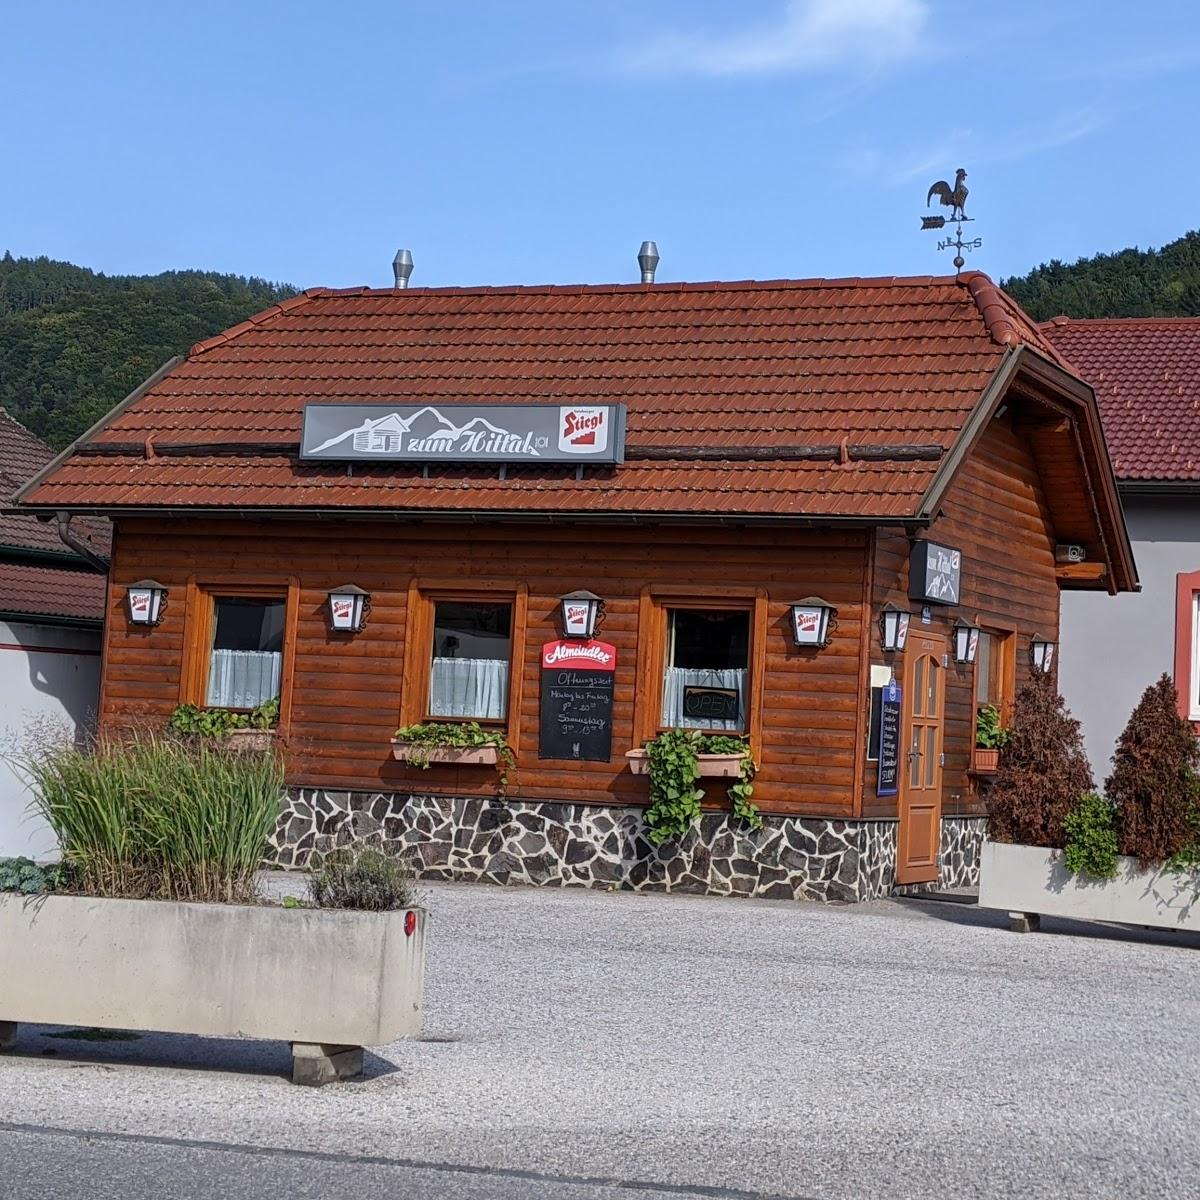 Restaurant "Zum Hittal" in Grimmenstein